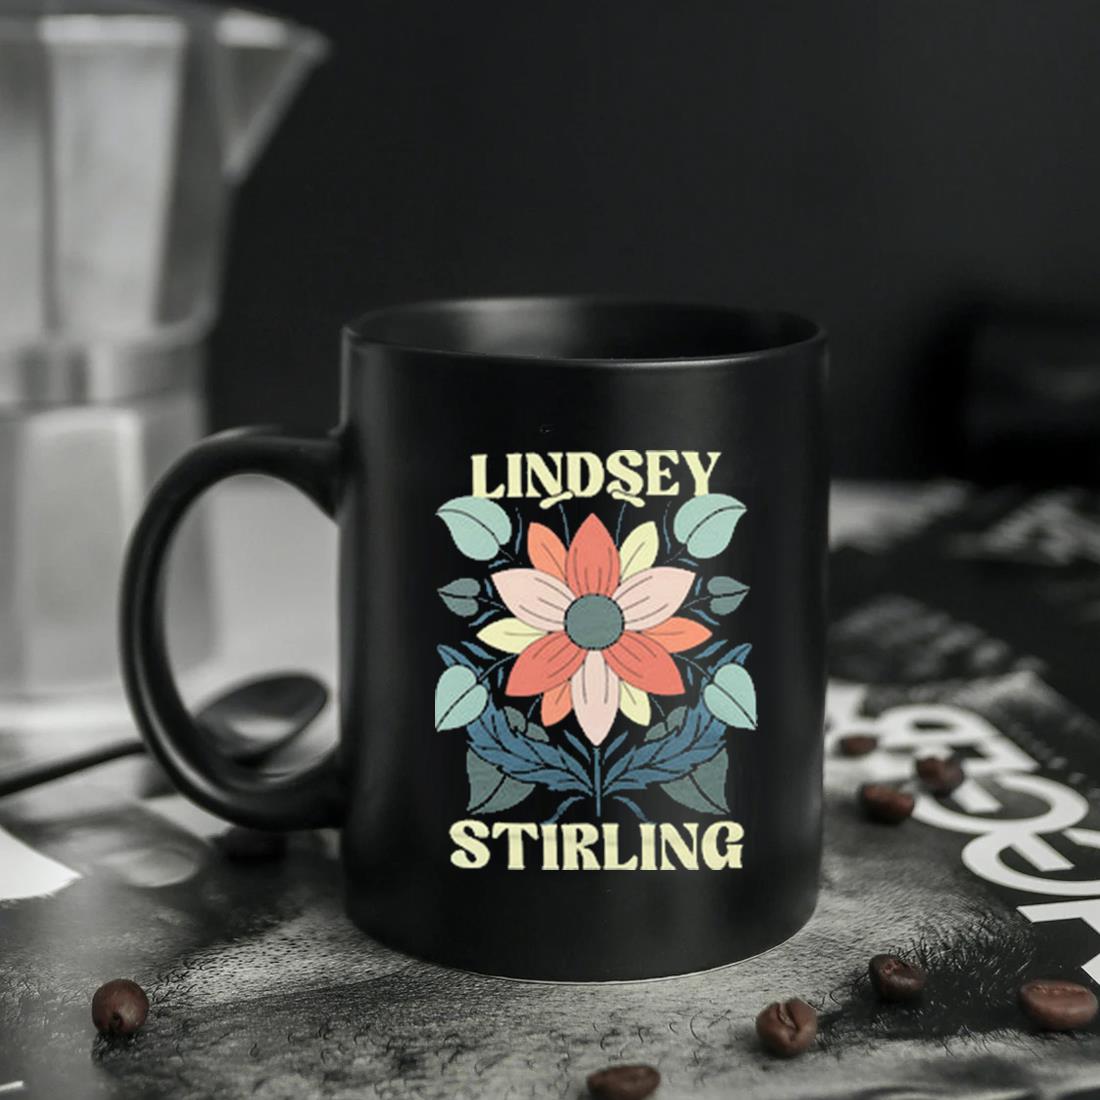 Lindsey Stirling Flower Shirt